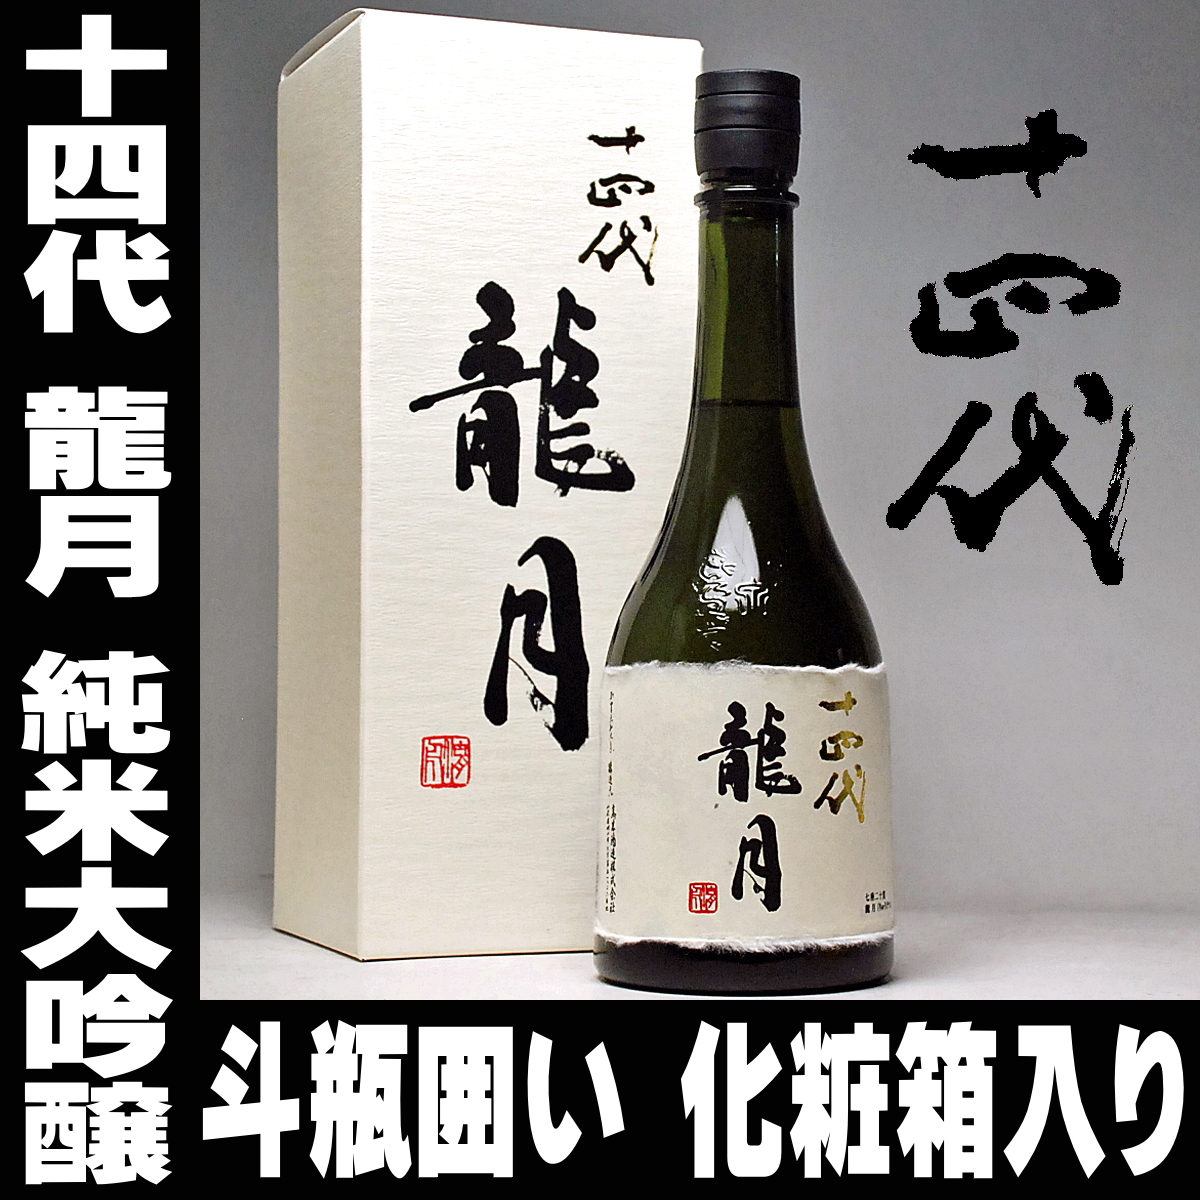 名作 純米大吟醸 高木酒造 十四代 龍月 720ml - 日本酒 - www.multinationalpr.com